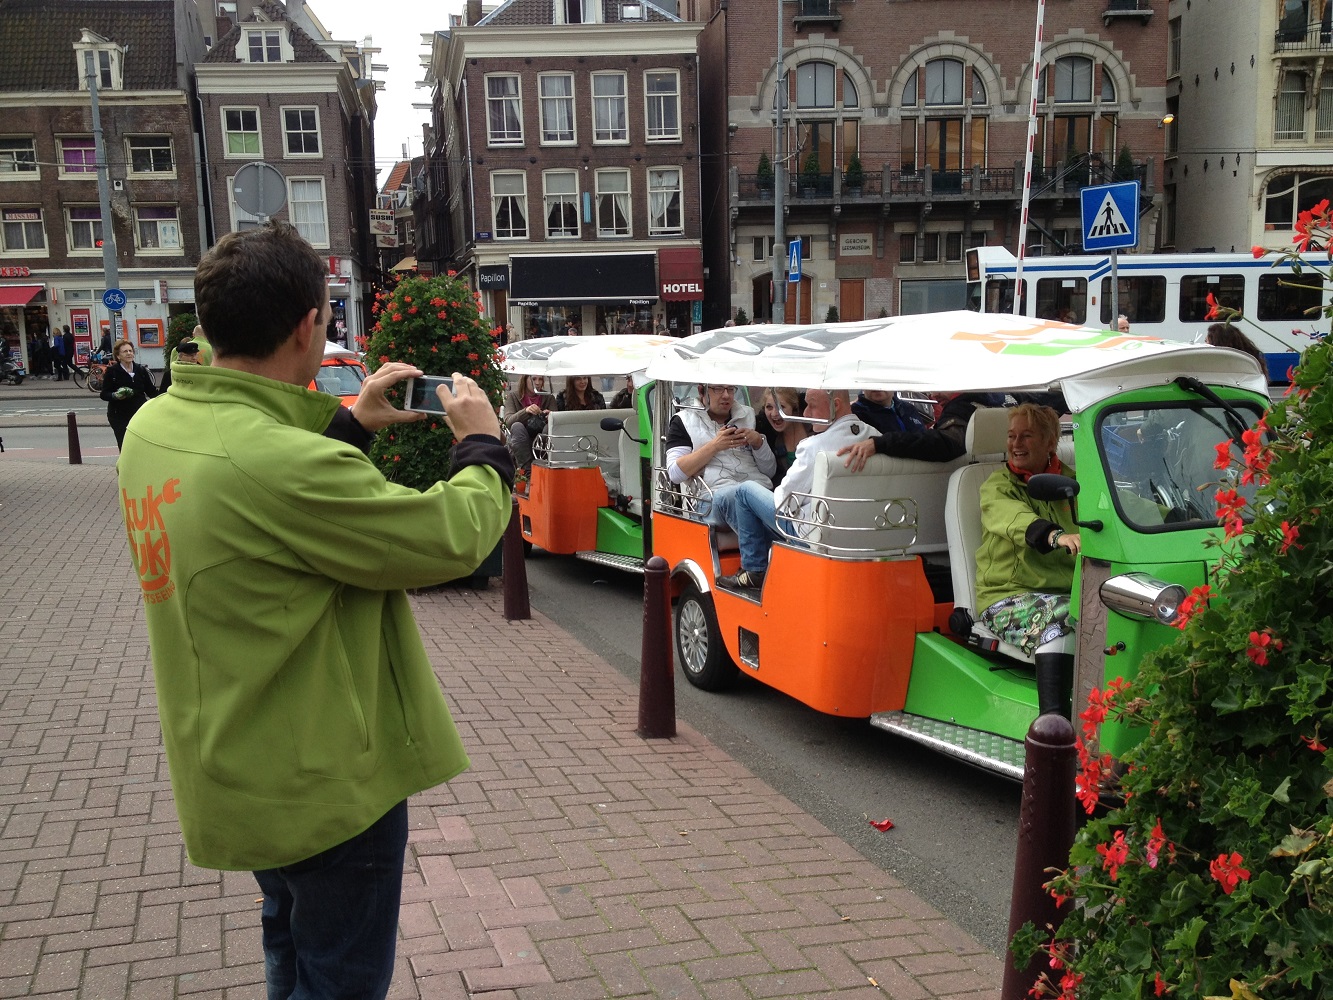 Mein Schiff Ausflug: Stadtrundfahrt im Tuk-Tuk in Amsterdam